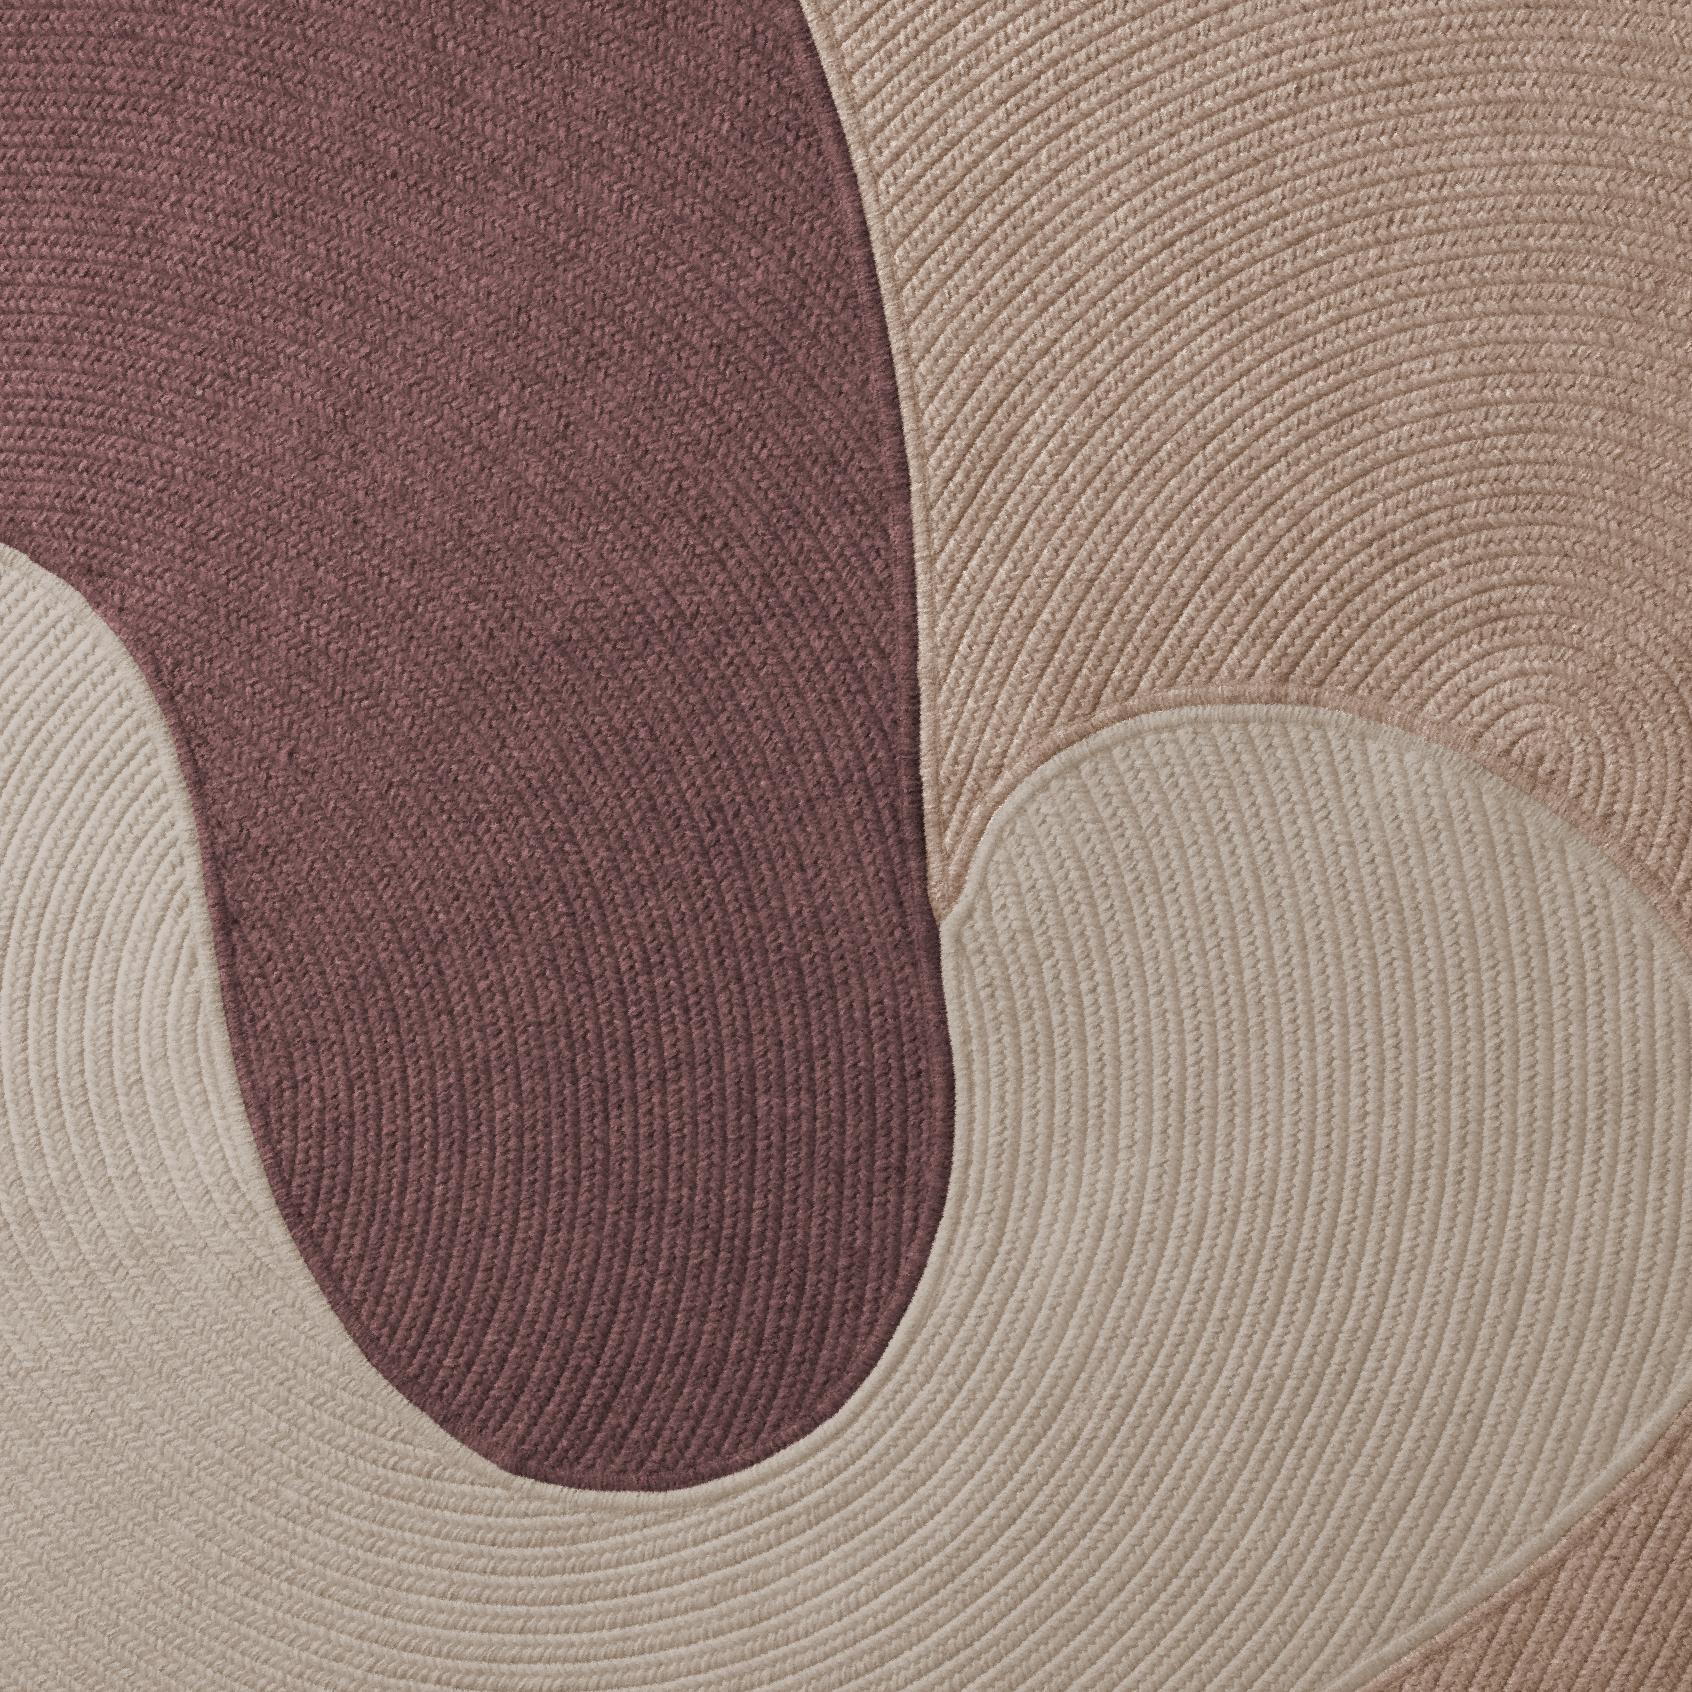 Diese Auflistung ist für einen 12 x 15 Teppich in den Farben, die im ersten Bild gezeigt werden, plus ein rug pad für Gebrauch auf harten Oberflächen.

Wir bieten eine Reihe von verschiedenen Farben an. Wir können die Farben entsprechend dem